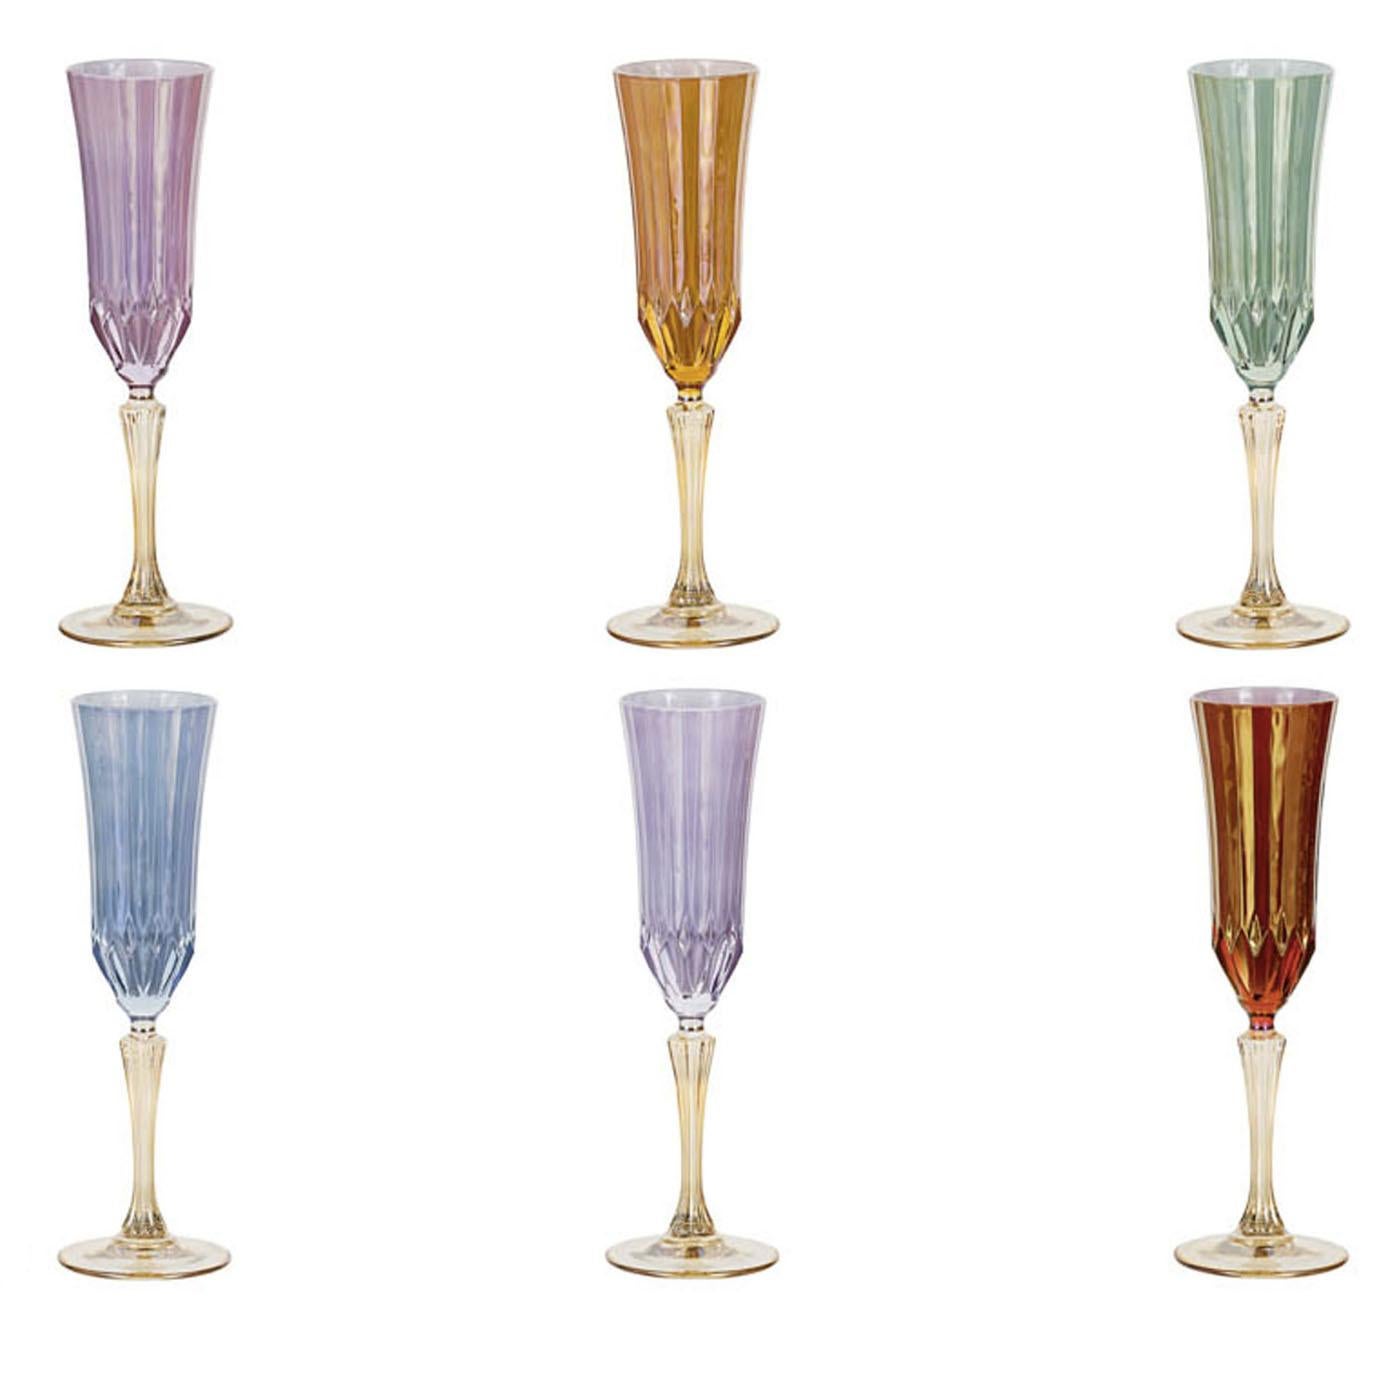 Dieses luxuriöse Set aus 6 18cl-Kelchen ist für Könige geeignet. Sie sind in 6 lebhaften, transparenten Farben erhältlich und eignen sich für Champagner oder jedes andere Getränk Ihrer Wahl. Jedes Glas ist handgefertigt.